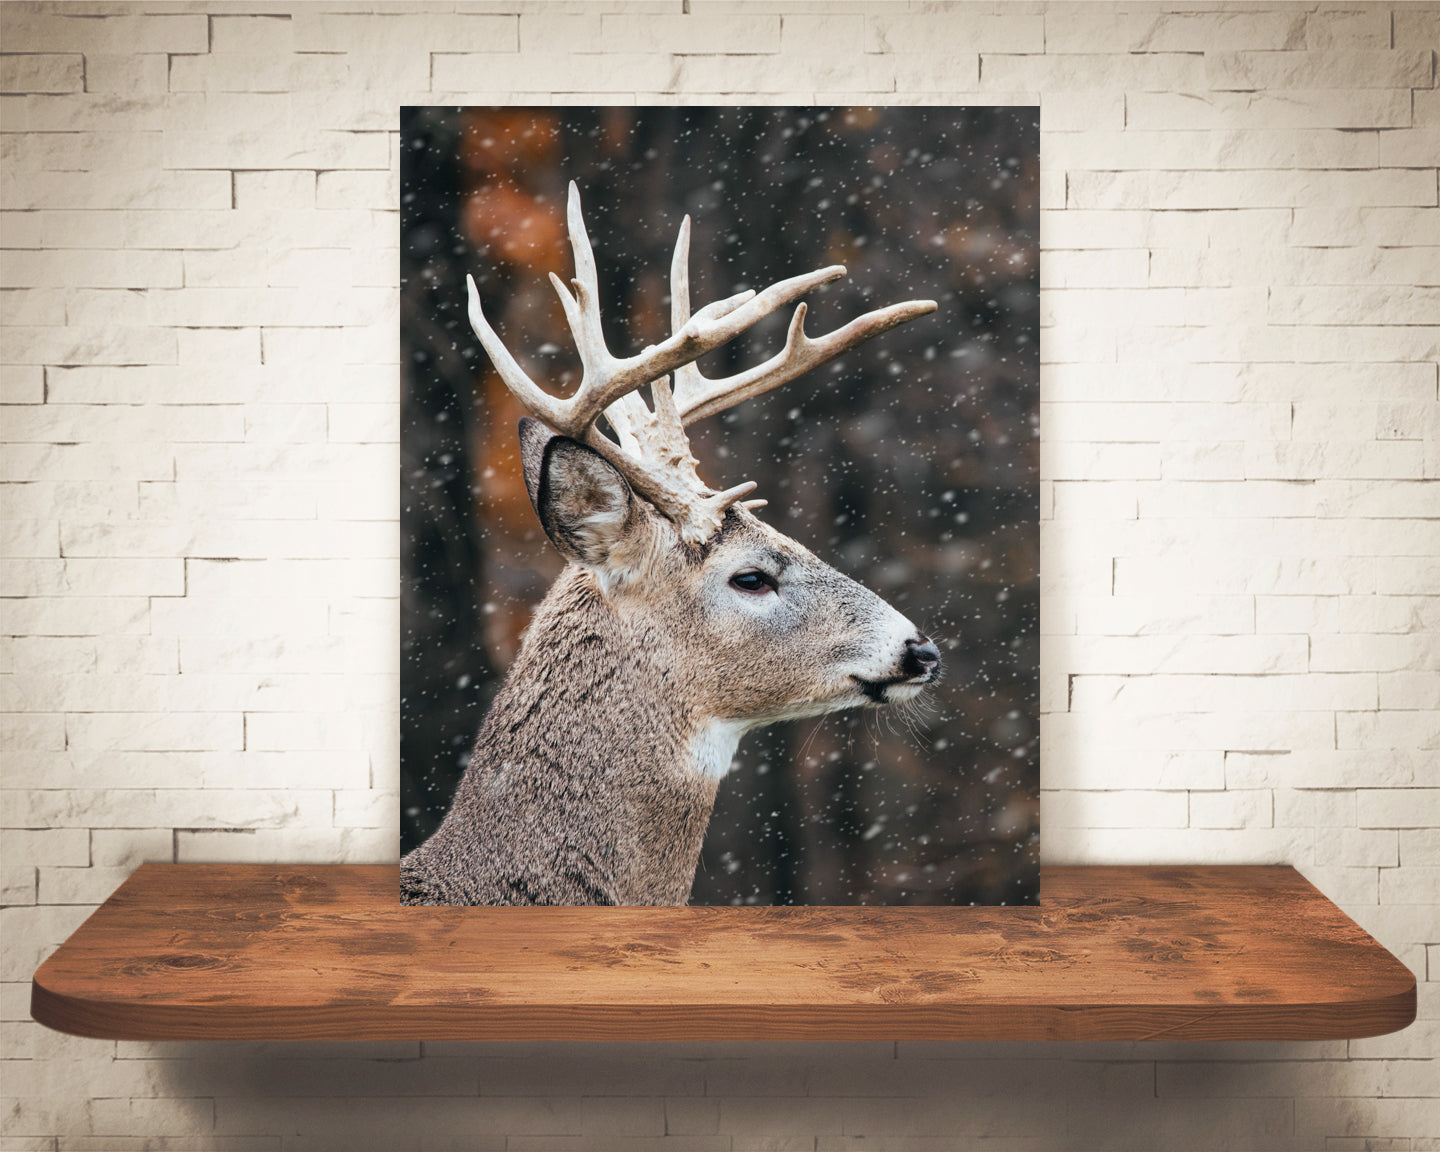 Deer Buck Photograph Snow